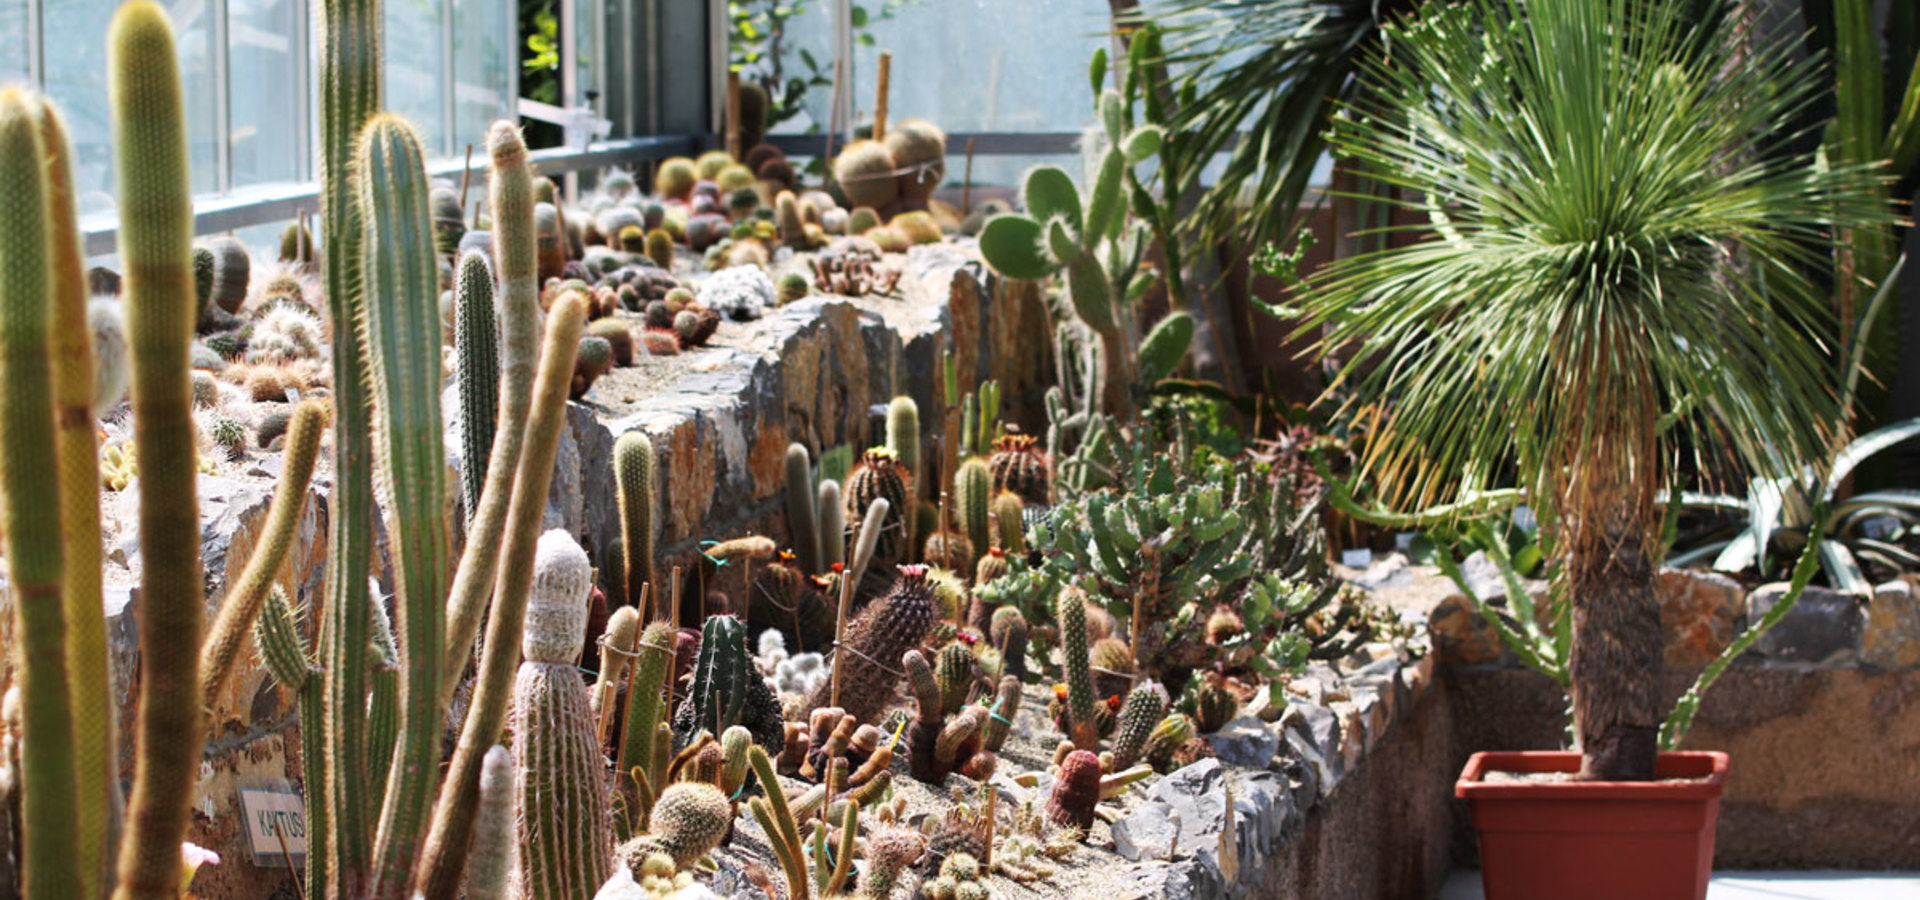 Razstava kaktusov